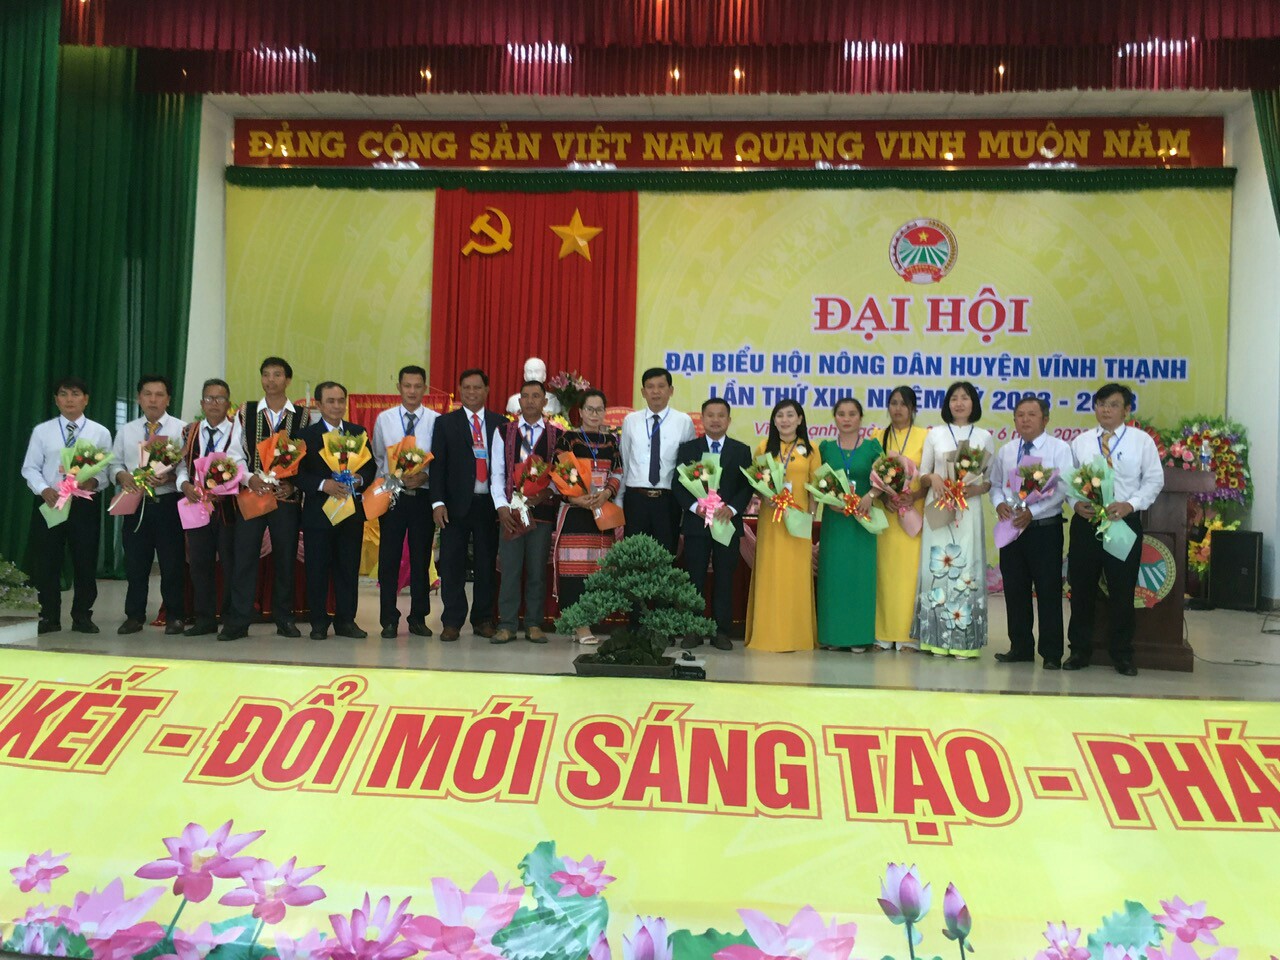 Bình Định: Nữ Thạc sĩ Xã hội học được bầu làm Chủ tịch Hội Nông dân huyện Vĩnh Thạnh, nhiệm kỳ 2023-2028 - Ảnh 1.